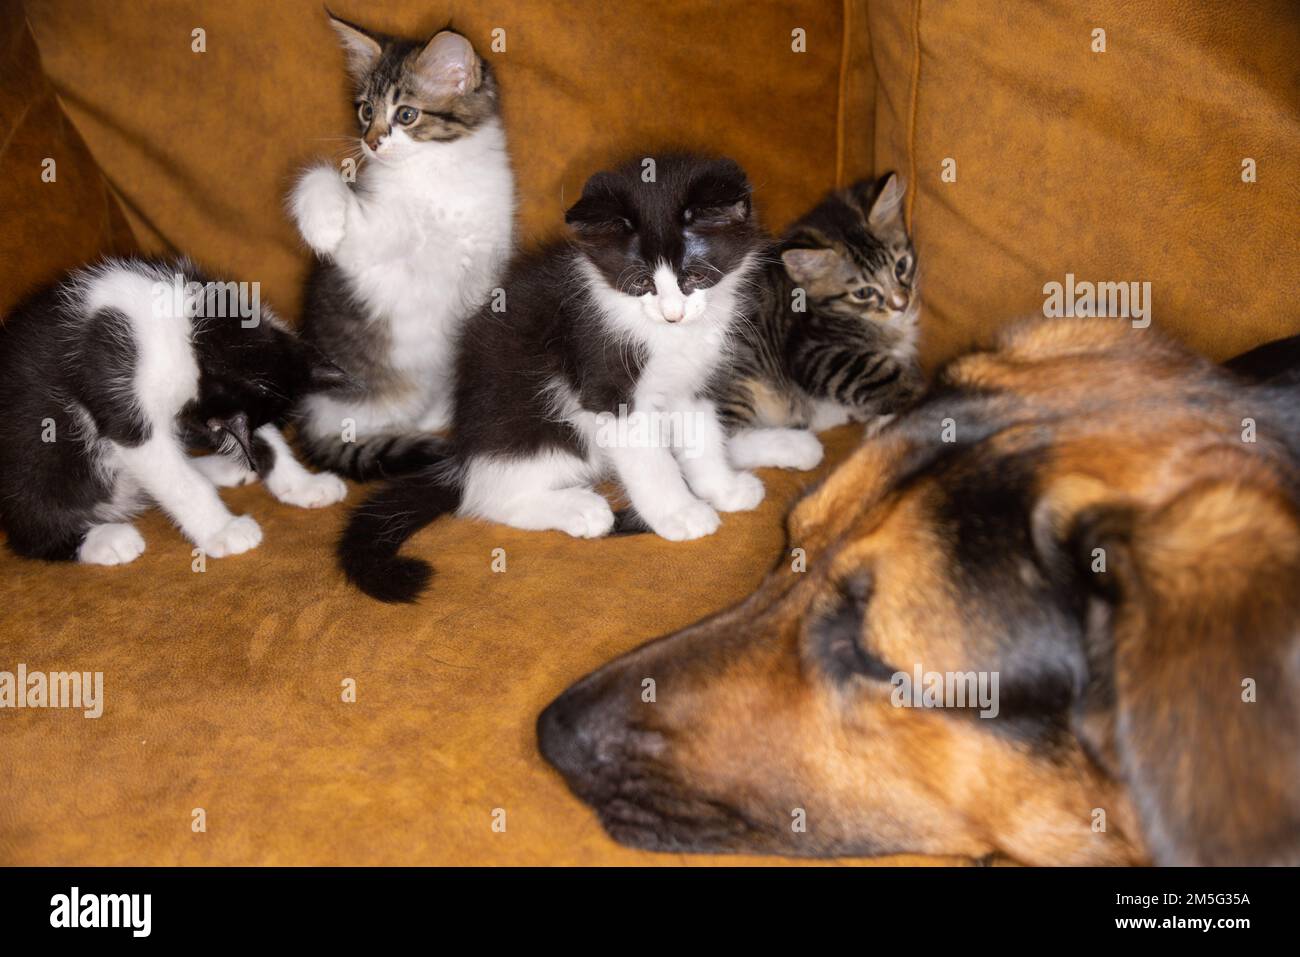 Kleines Kätzchen, das einen Hund ärgert. Katze und Hund harmonisch Seite an Seite, Kittenschutz über alle Arten hinweg. Tierpflege. Liebe und Freundschaft. Inland Stockfoto